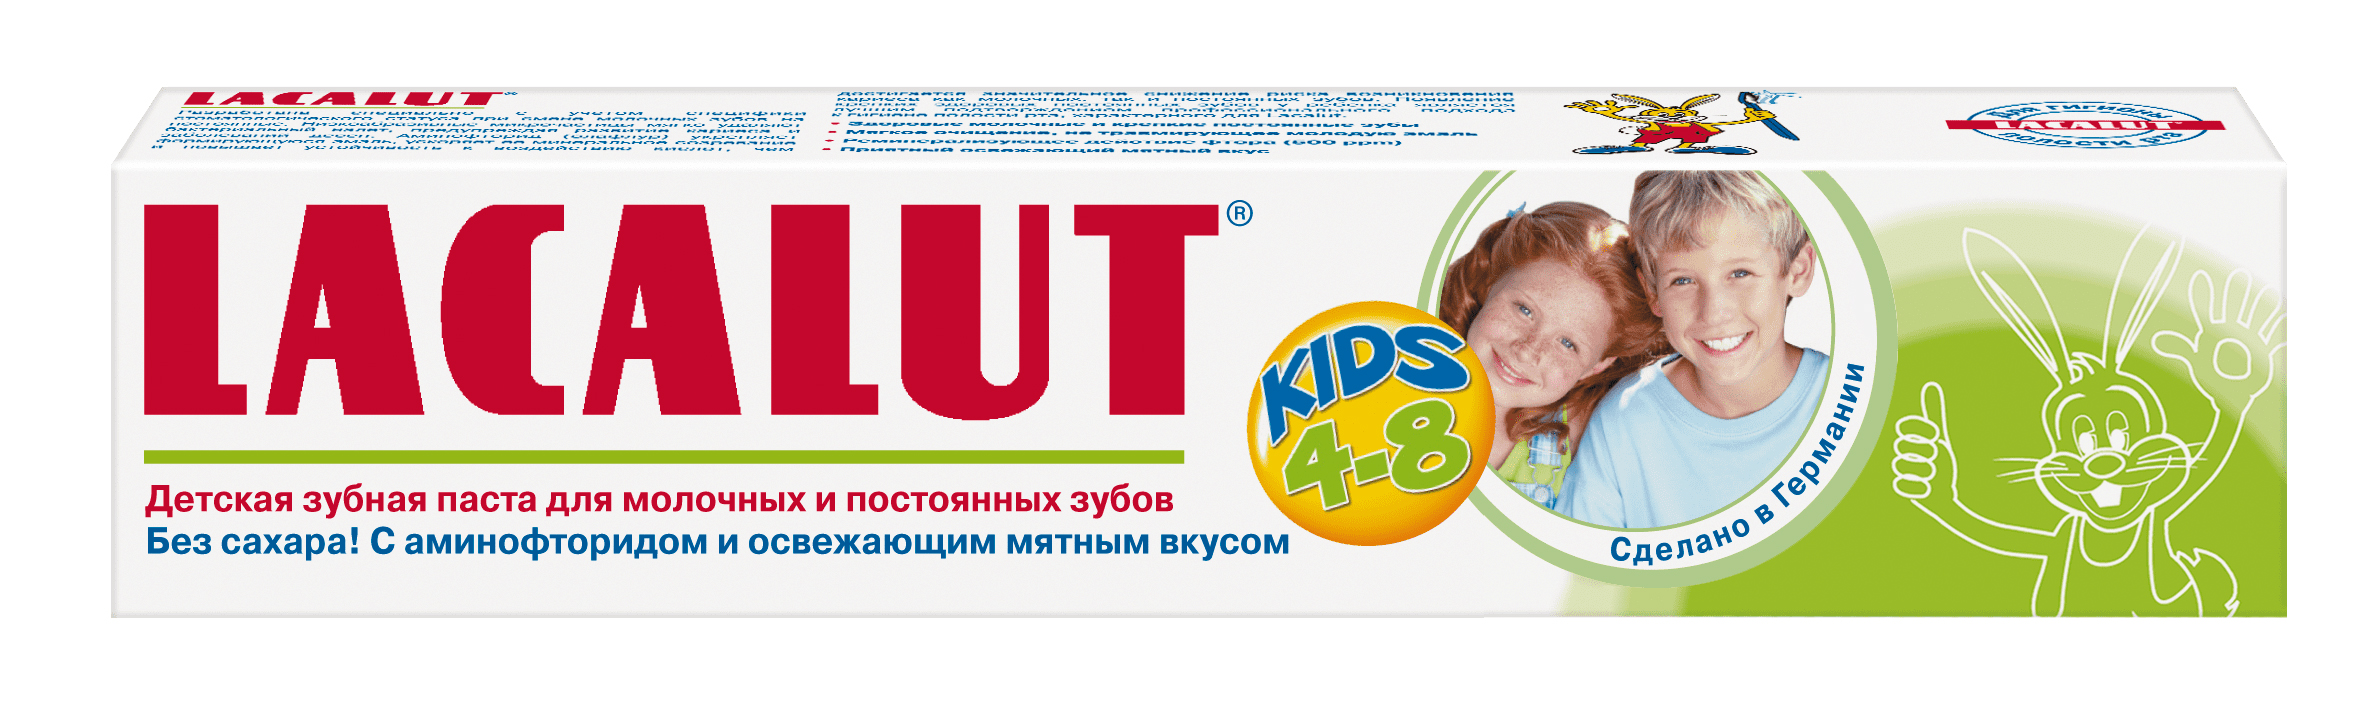 Лакалют паста зубная Кидс для детей от 4 до 8лет 50мл, Dr.Theiss Naturwaren GmbH  - купить